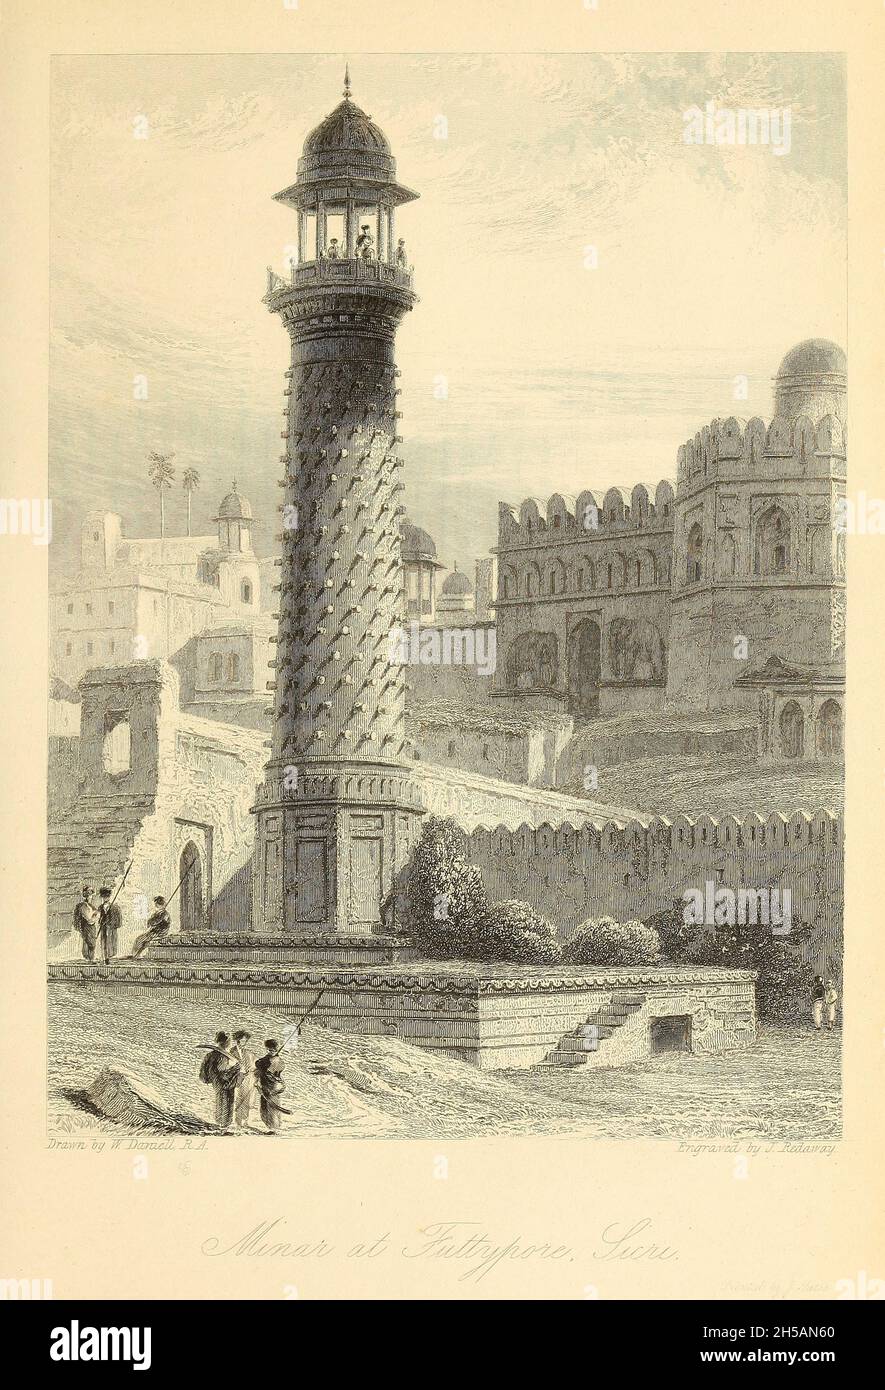 Minaret à Futtepore Sicri (Fatehpur Sikri) [Fatehpur Sikri est une ville du district d'Agra dans l'Uttar Pradesh, en Inde.La ville elle-même a été fondée comme la capitale de l'empire moghol en 1571 par l'empereur Akbar, servant ce rôle de 1571 à 1585, quand Akbar l'a abandonnée en raison d'une campagne au Punjab et a été complètement abandonné en 1610].D'après le livre « The Oriental Annual, or, Scenes in India » du rév. Hobart Caunter publié par Edward Bull, Londres 1838 gravures de dessins de William Daniell Banque D'Images